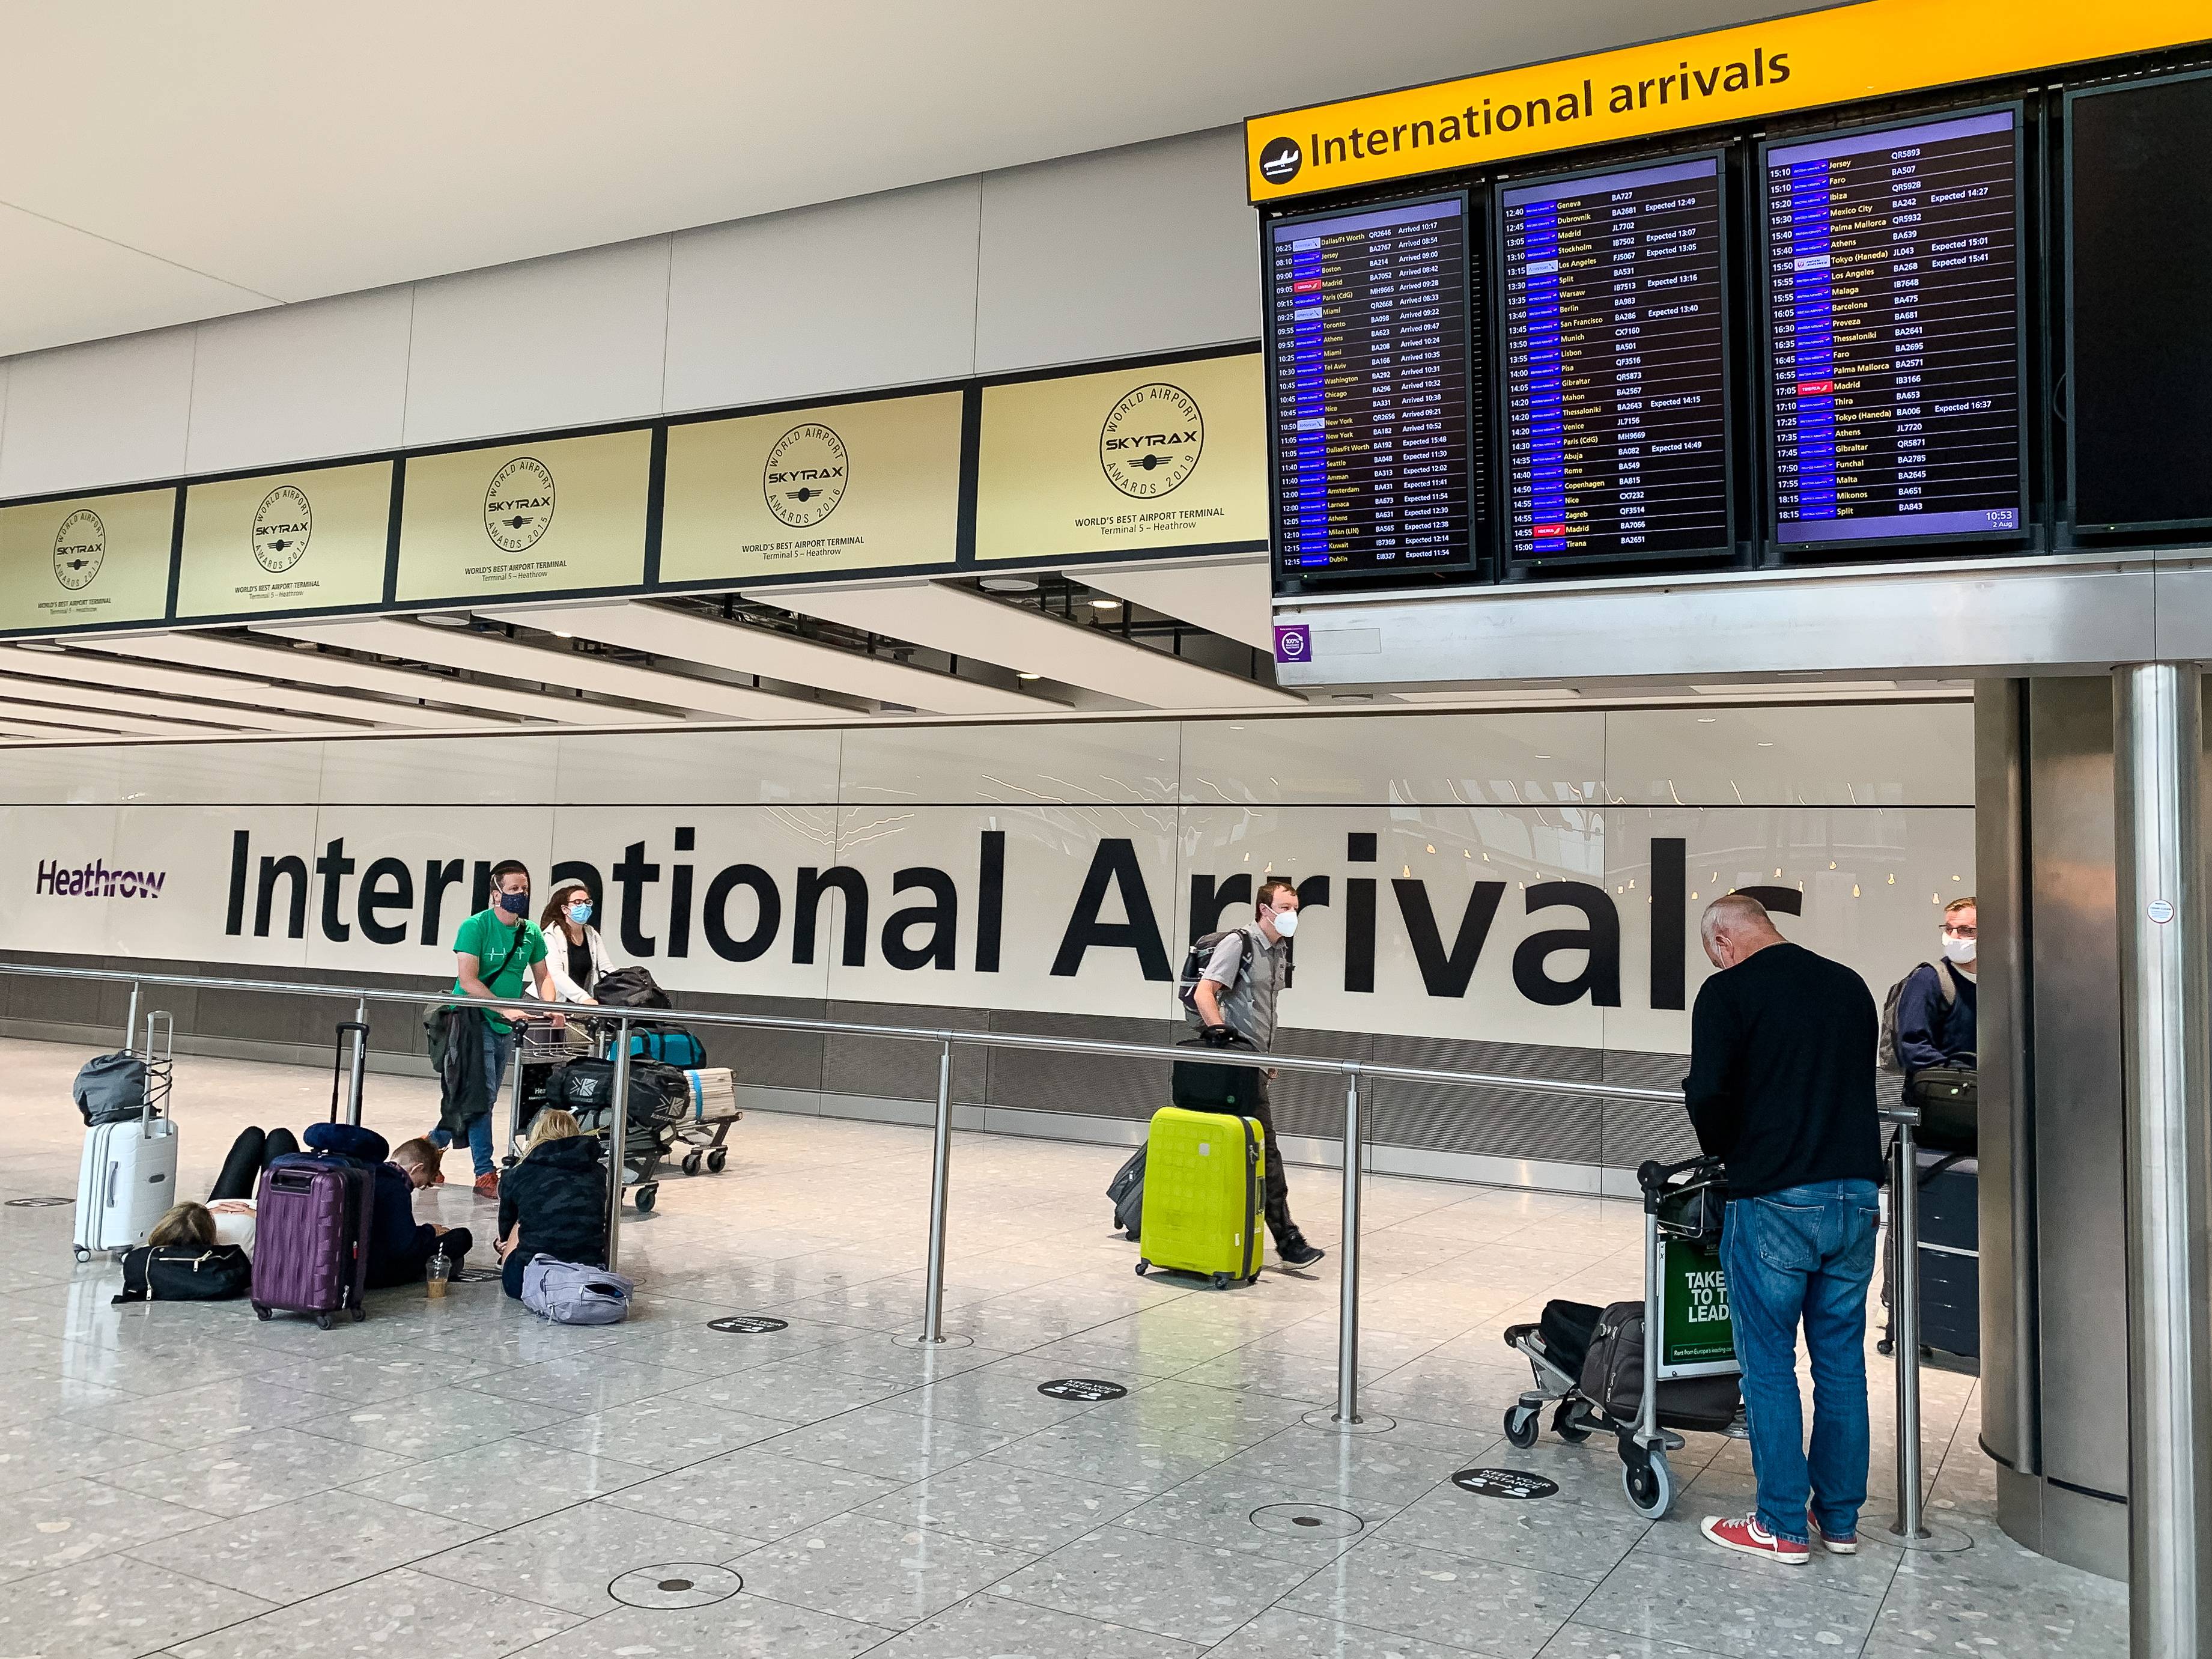 8月2日,旅客到达英国伦敦希思罗机场新华社/欧新